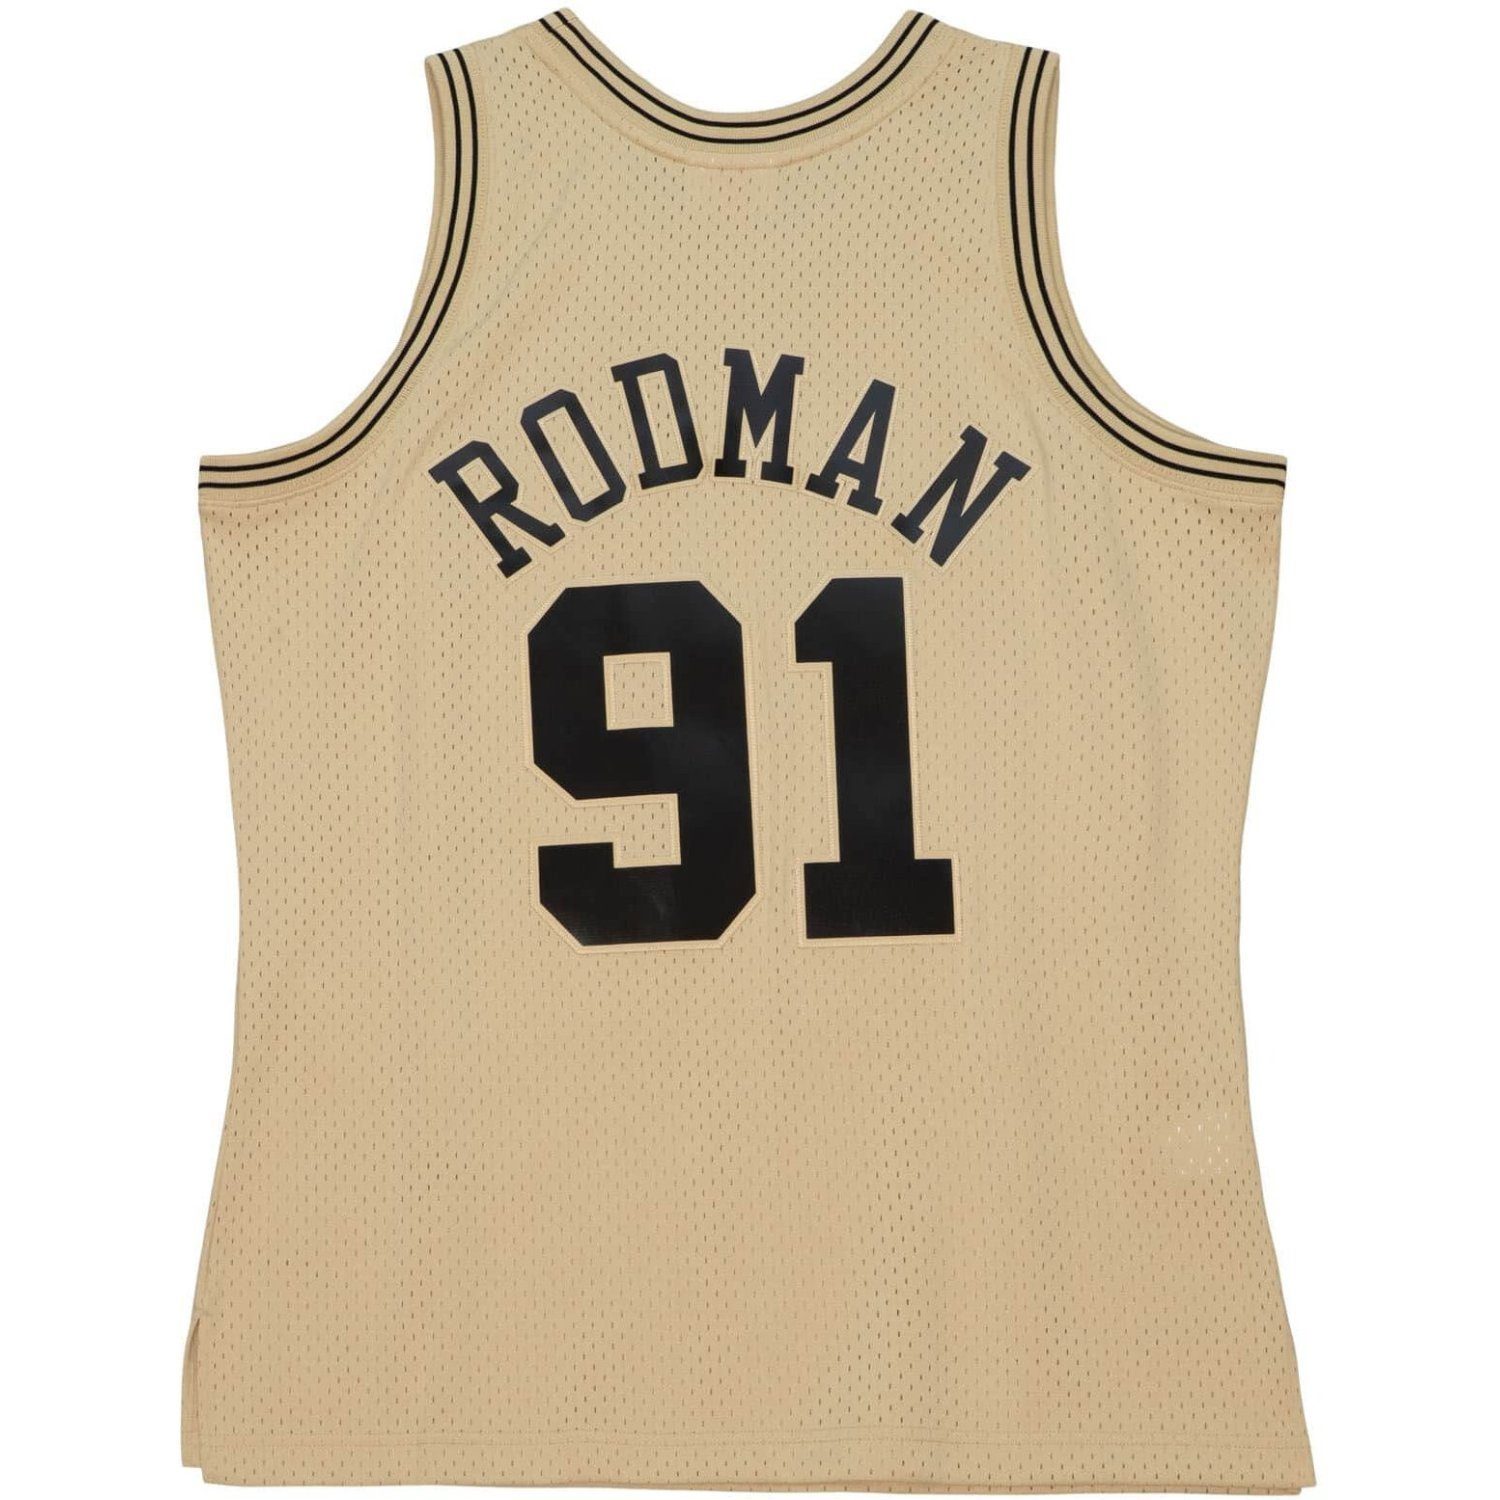 (verkauft) Hardwood Classic Mitchell & Ness Dennis Rodman Basketball Trikot  Jersey